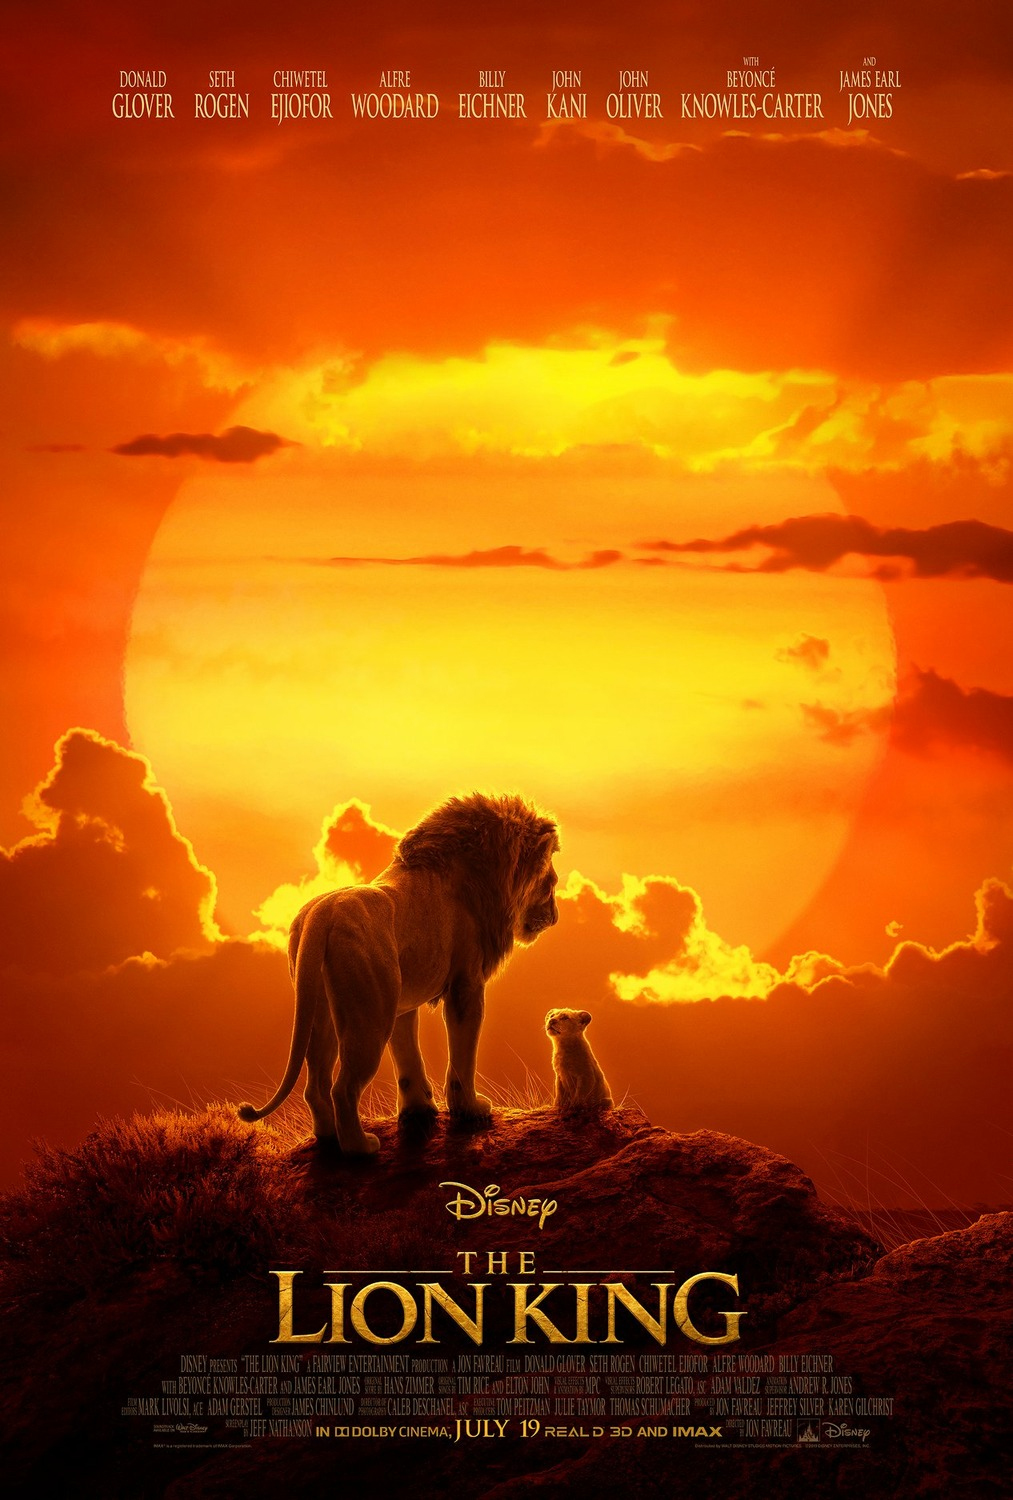 Le Roi Lion (2019) - Film d'Animation Disney